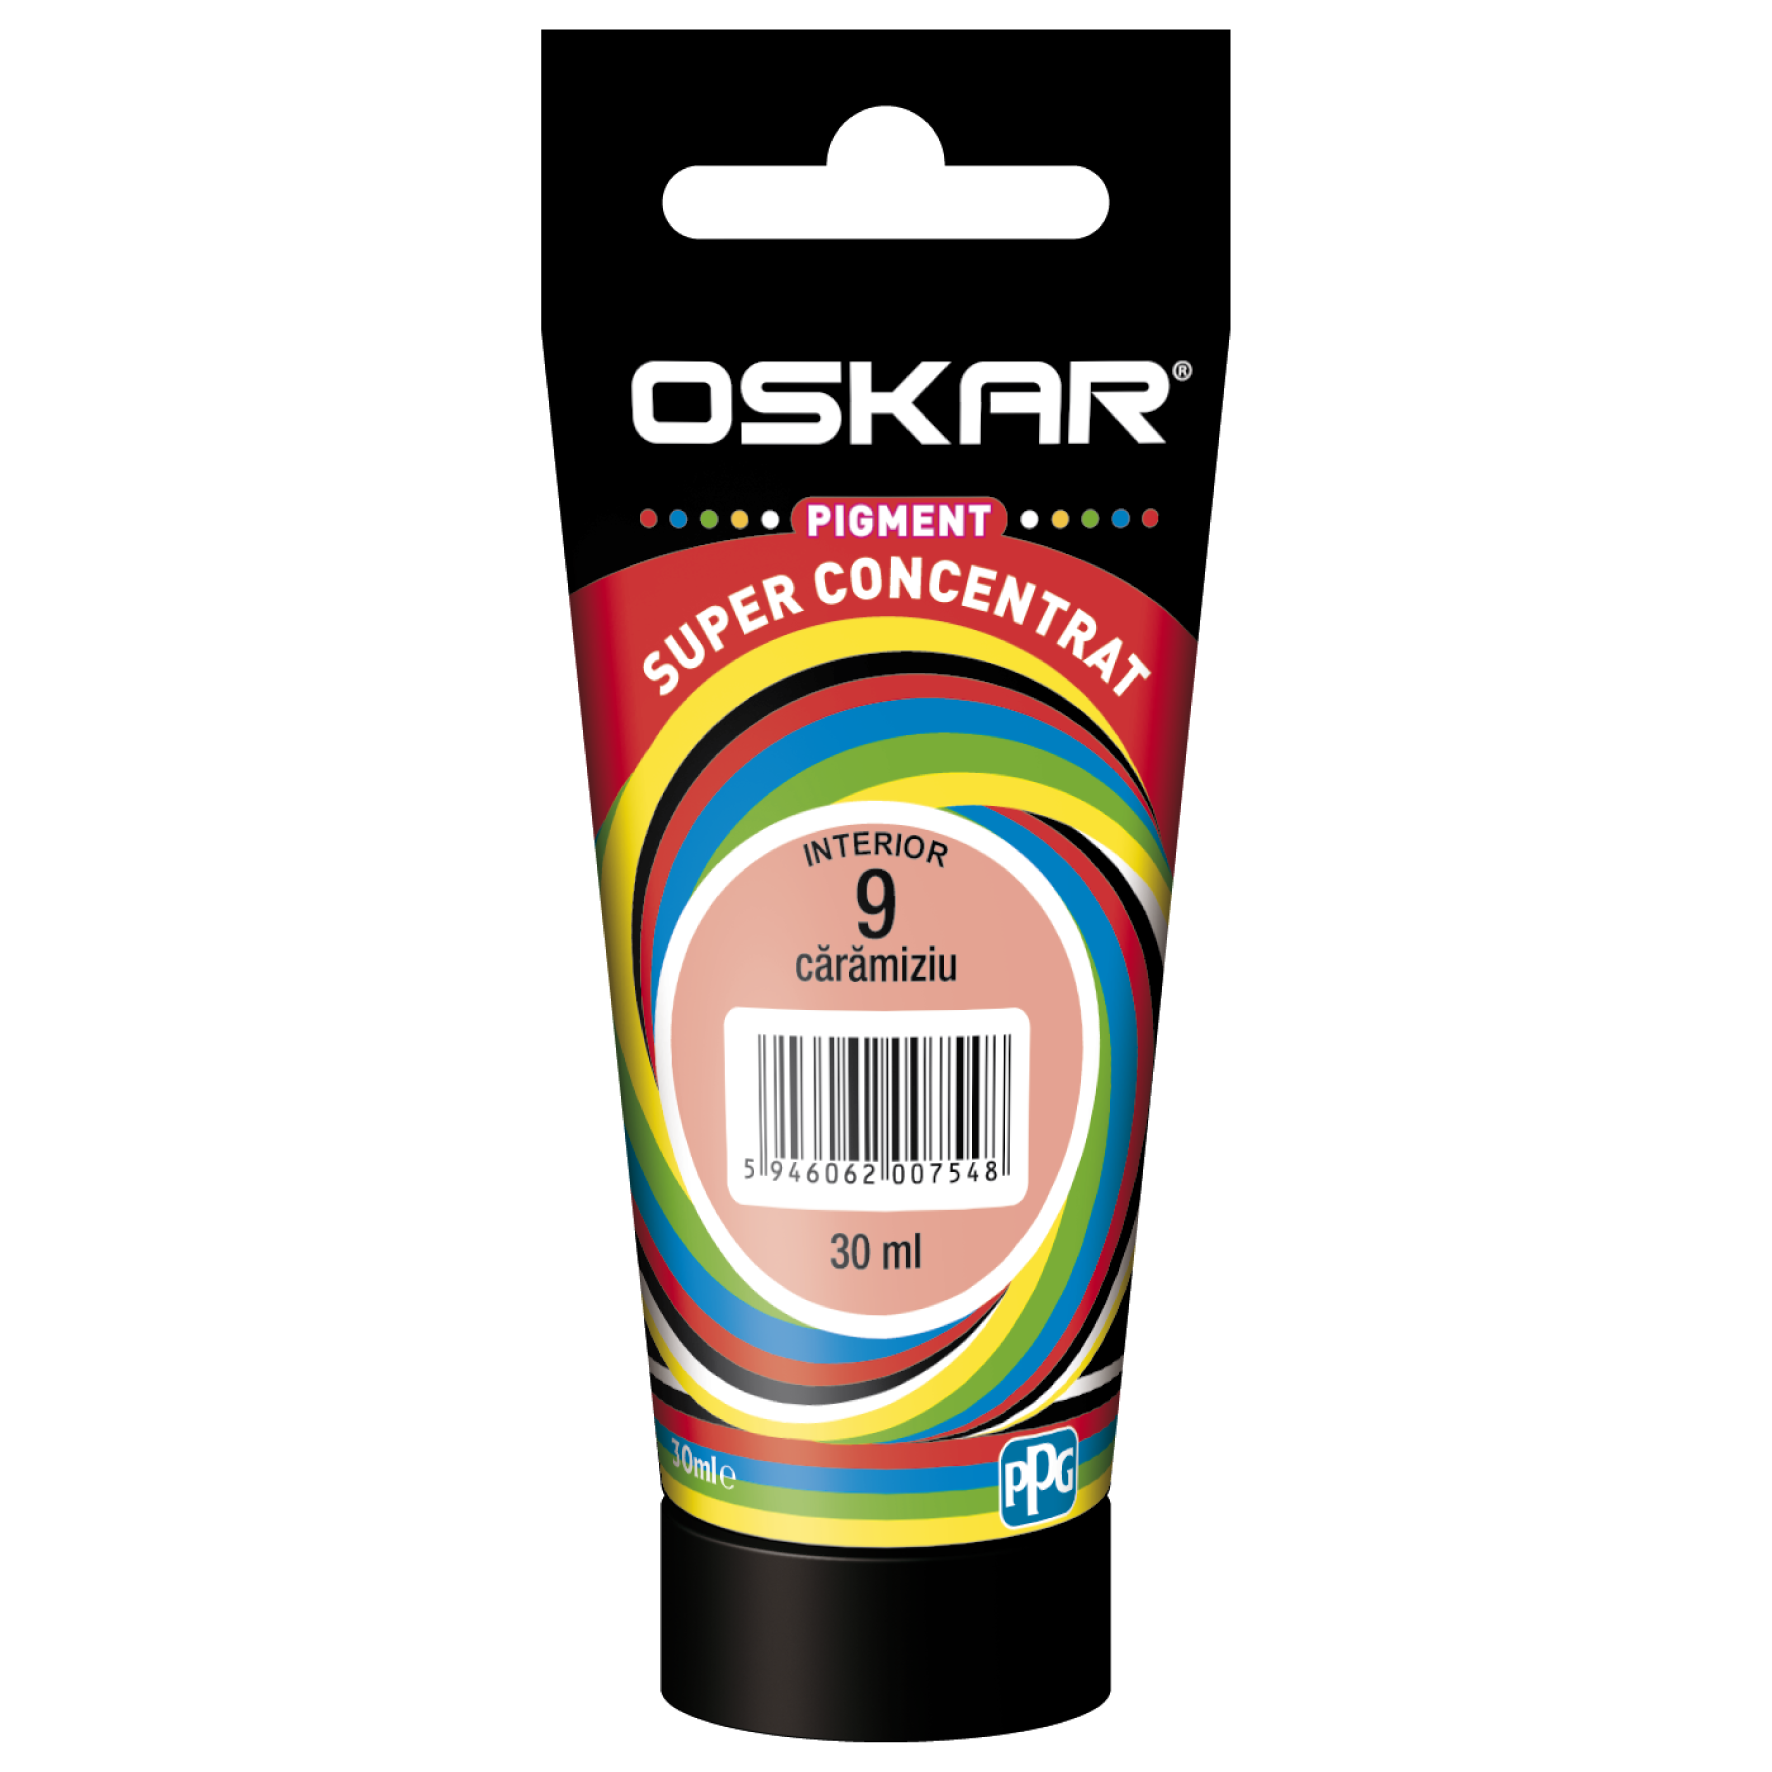 Pigment vopsea lavabila Oskar super concentrat, caramiziu 9, 30 ml caramiziu